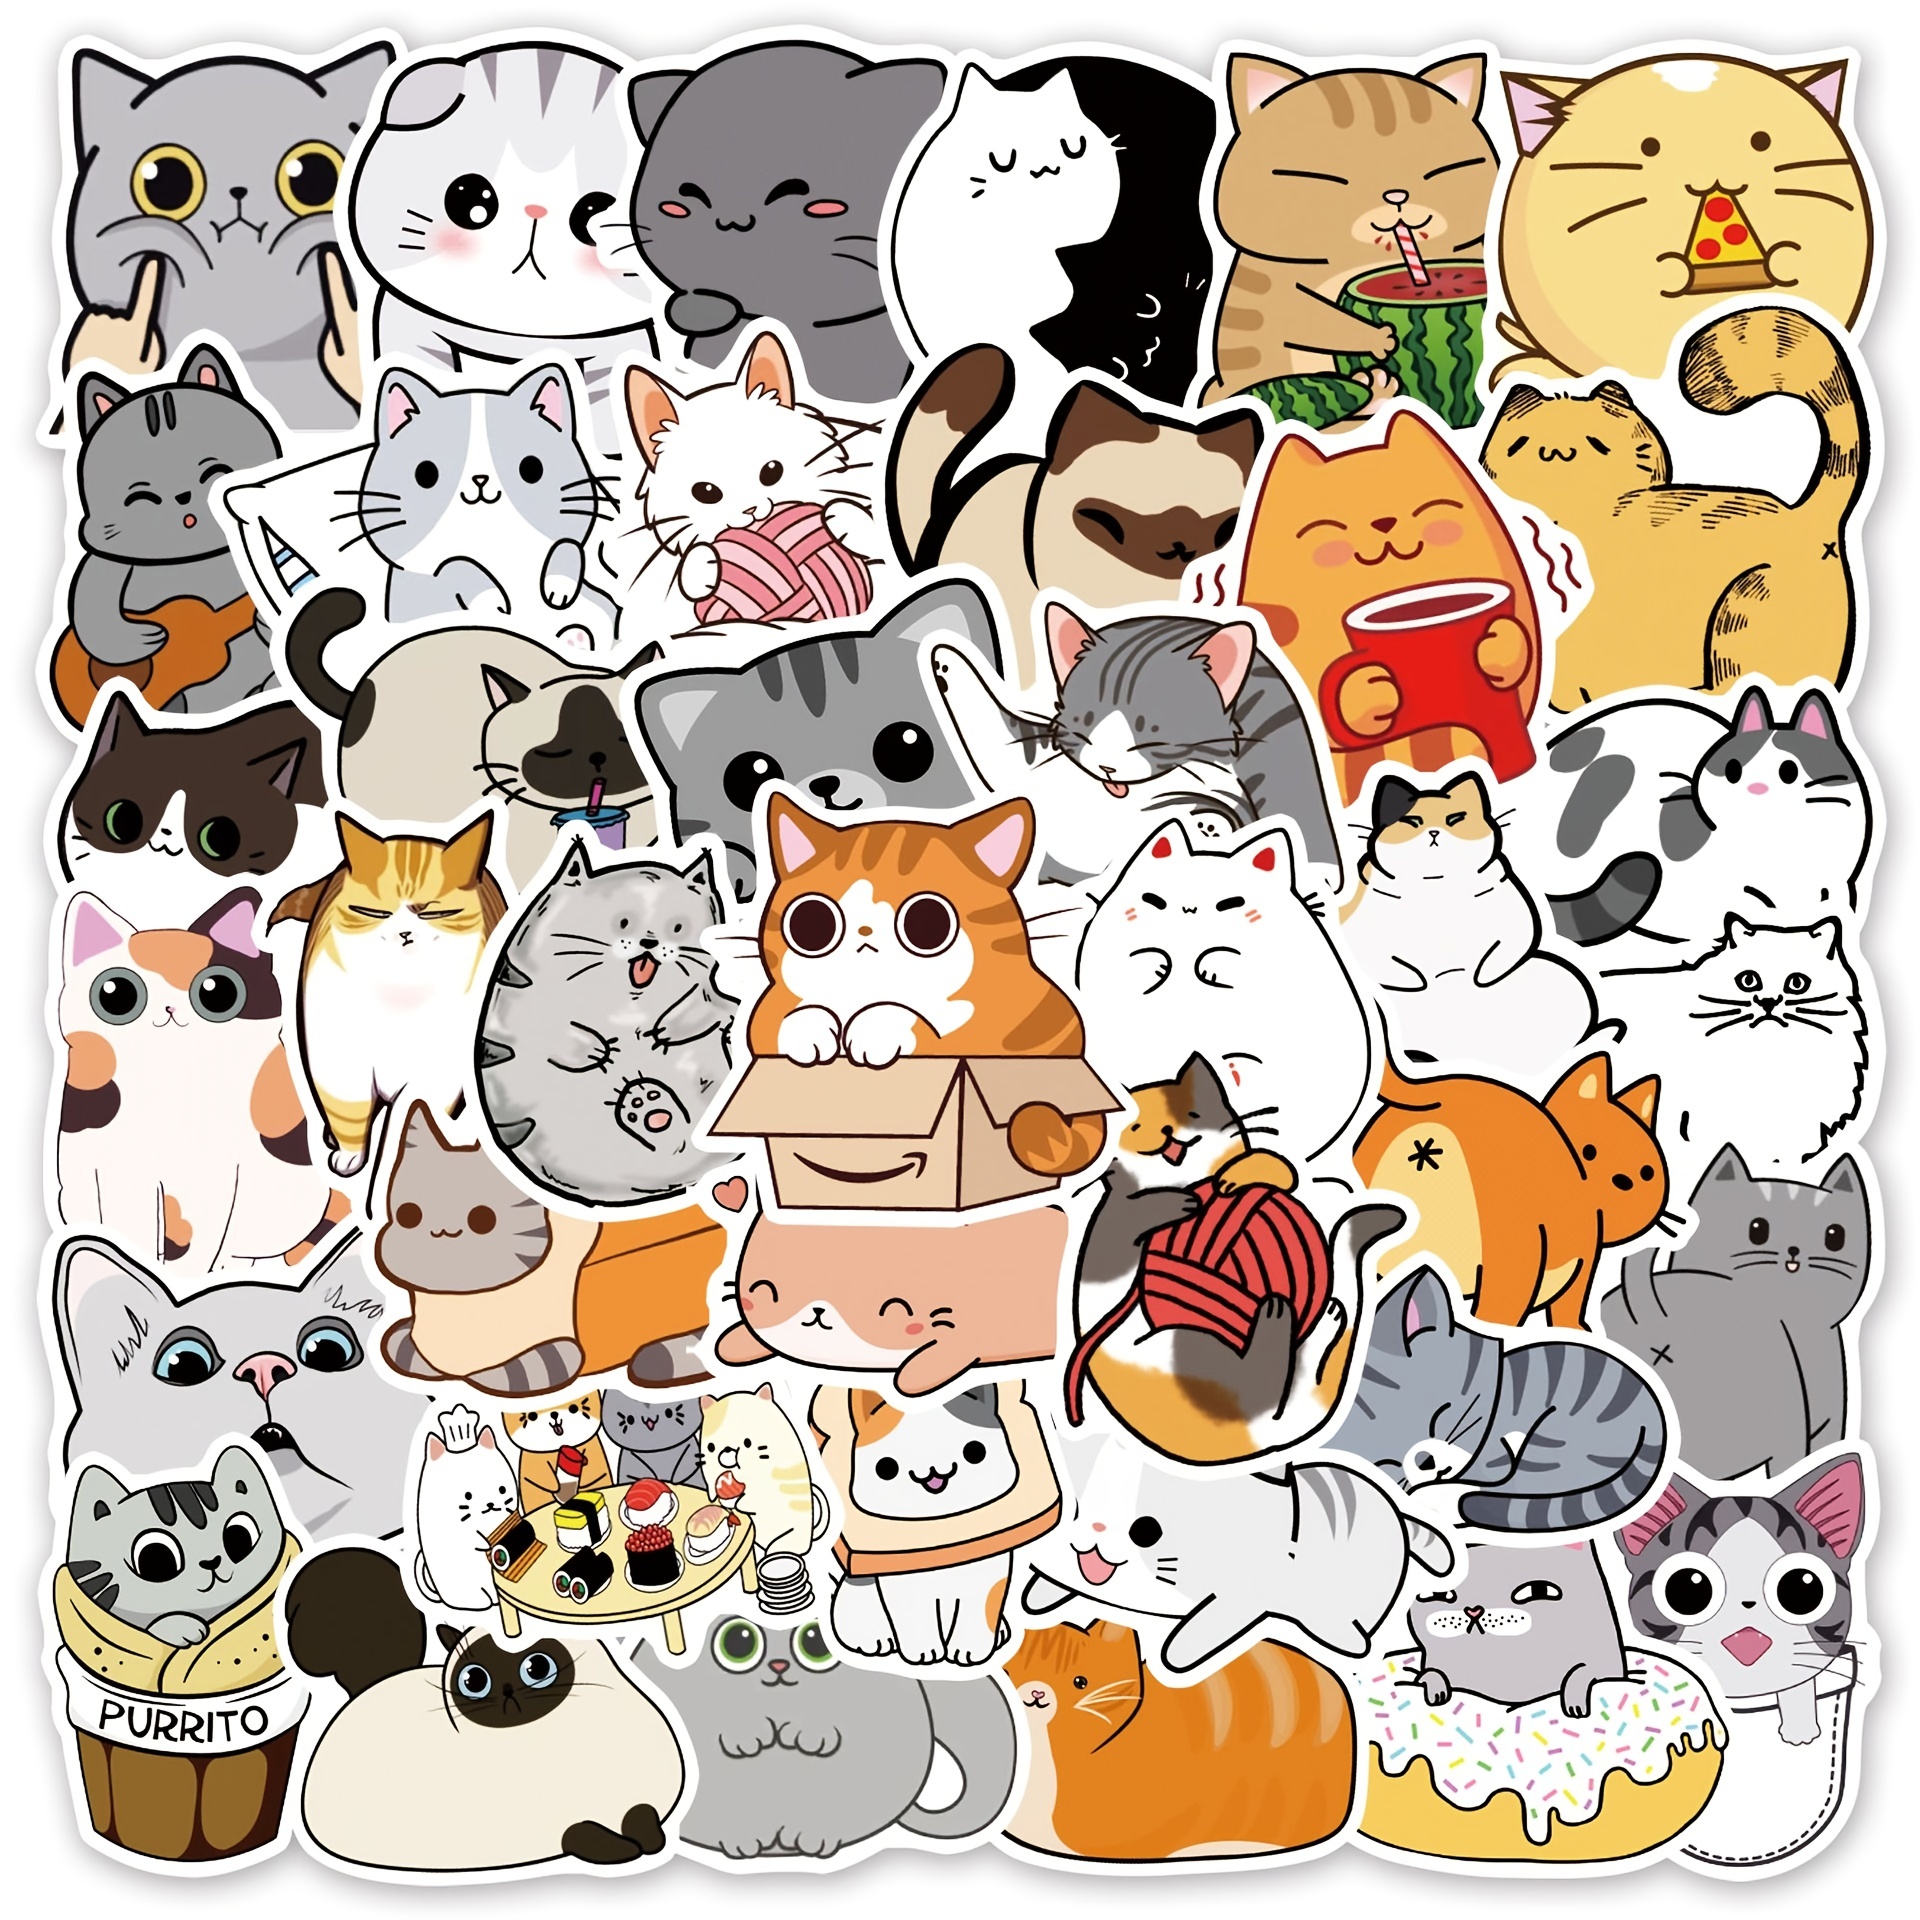 100 pegatinas kawaii lindas anime, anime, estética, meme, dibujos animados,  japonés, oso, conejito, vsco, calcomanía kawaii, cosas para laptop